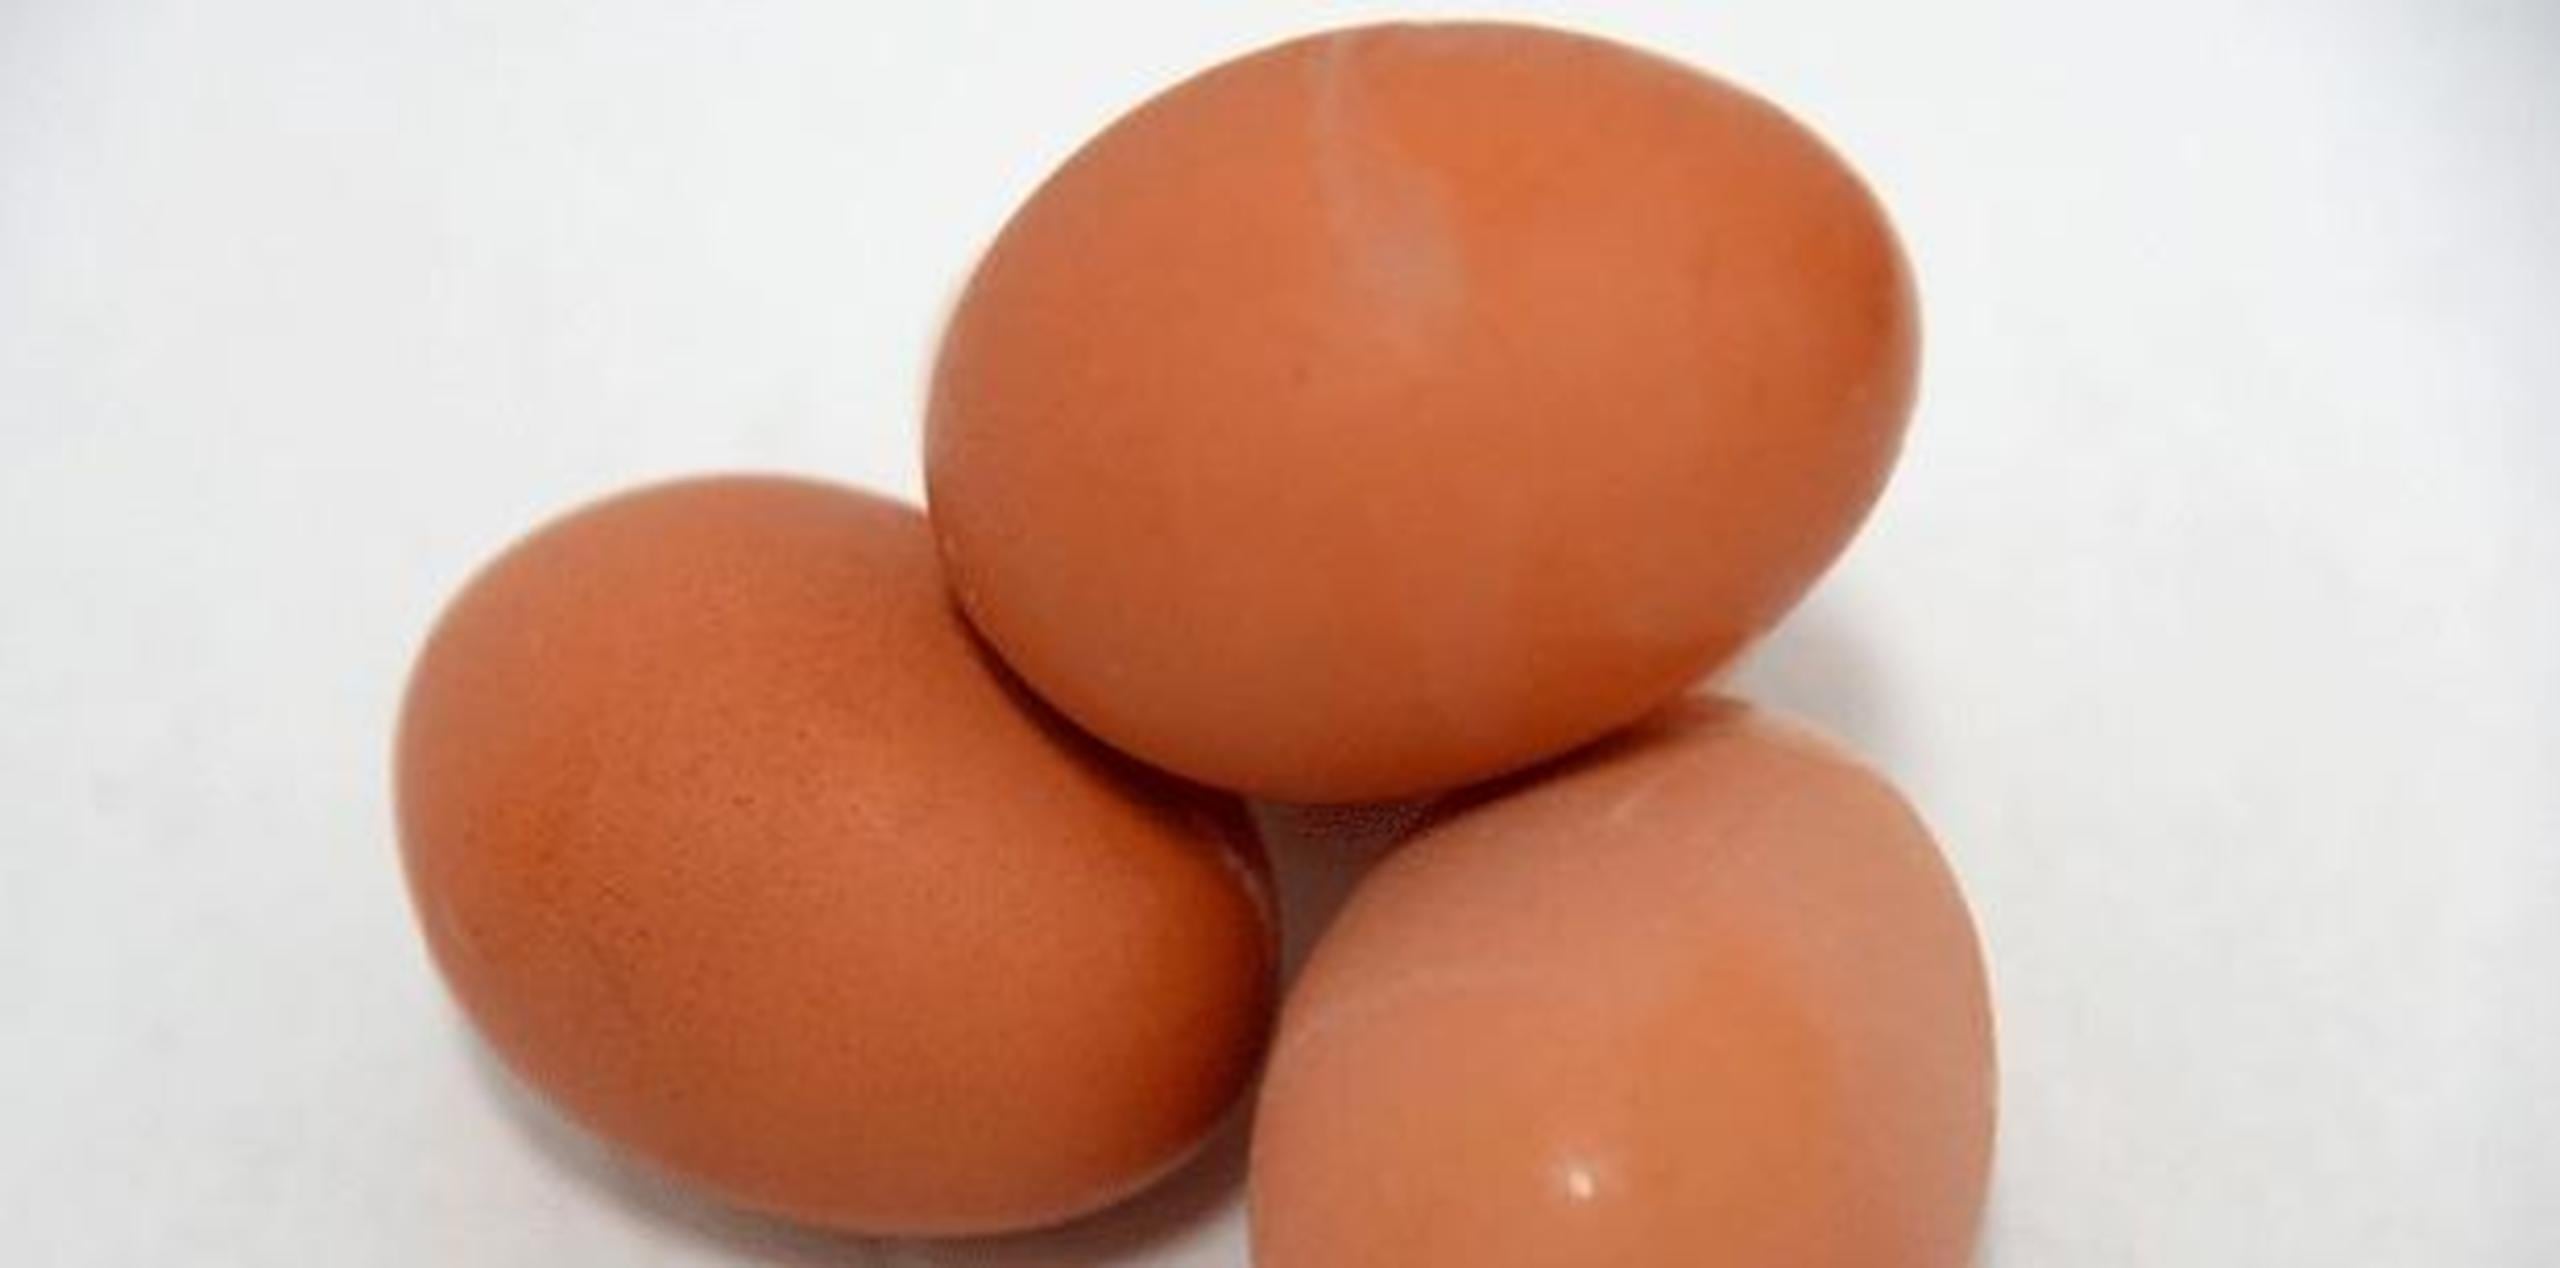 El huevo hervido -que puede comerse solo, añadirlo a ensaladas y otros platos- requiere una cocción específica para que no se rompa el cascarón y un tiempo determinado de acuerdo a tu gusto. (Archivo)